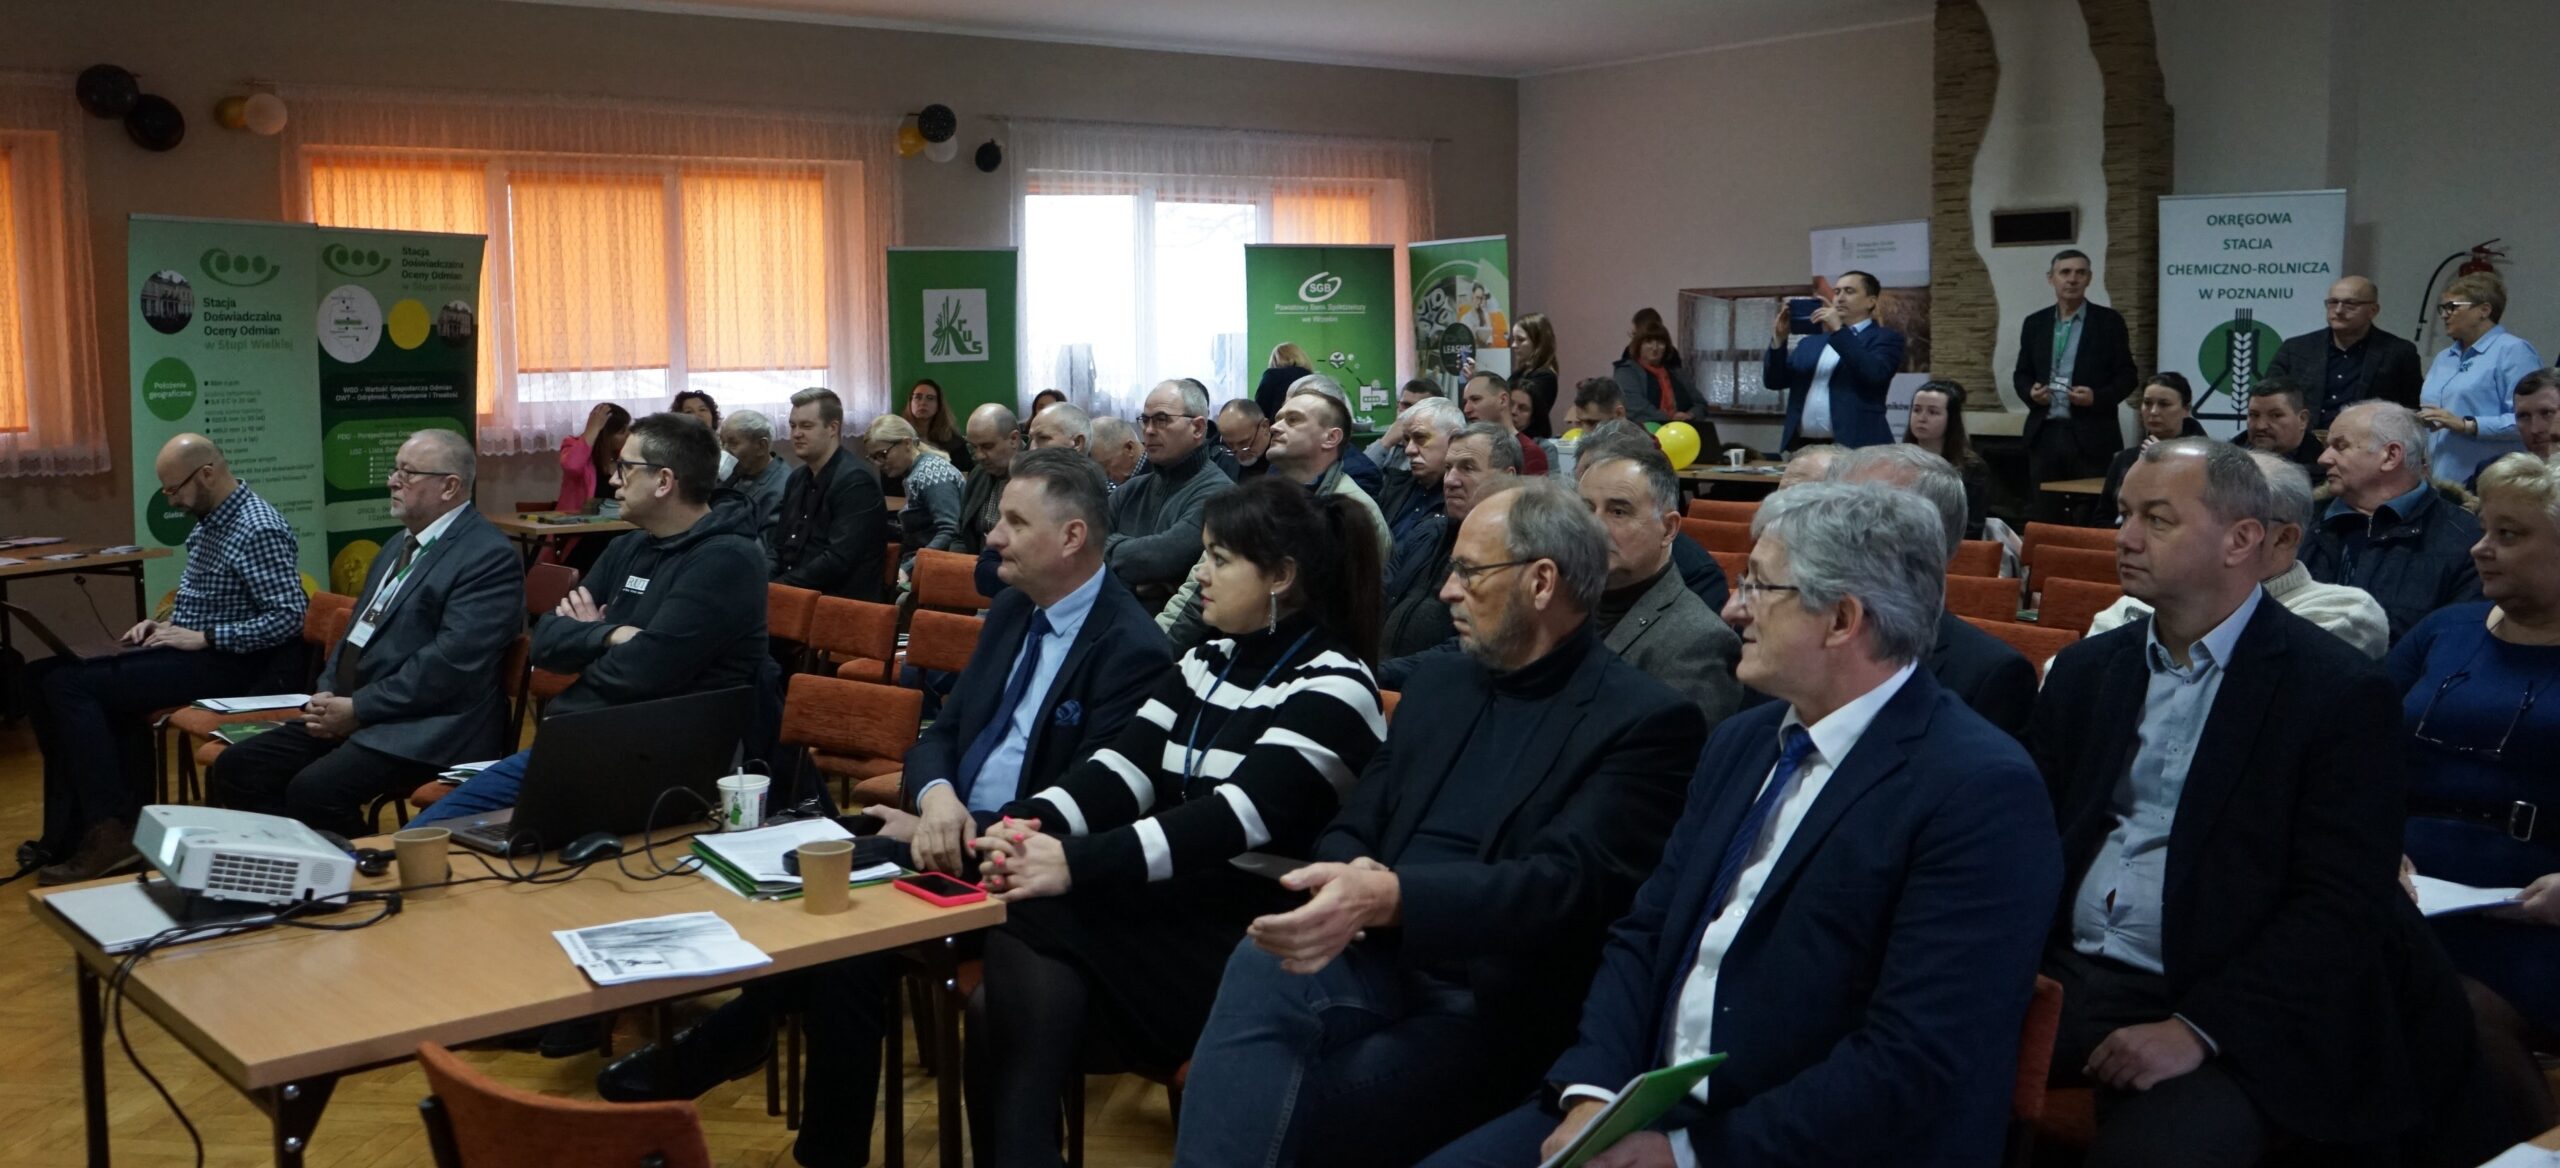 Widok na salę, w ktore odbywa się Forum Rolnicze 2024 powiatu wrzesińskiego - sala pełna ludzi siedzących na krzesłach.